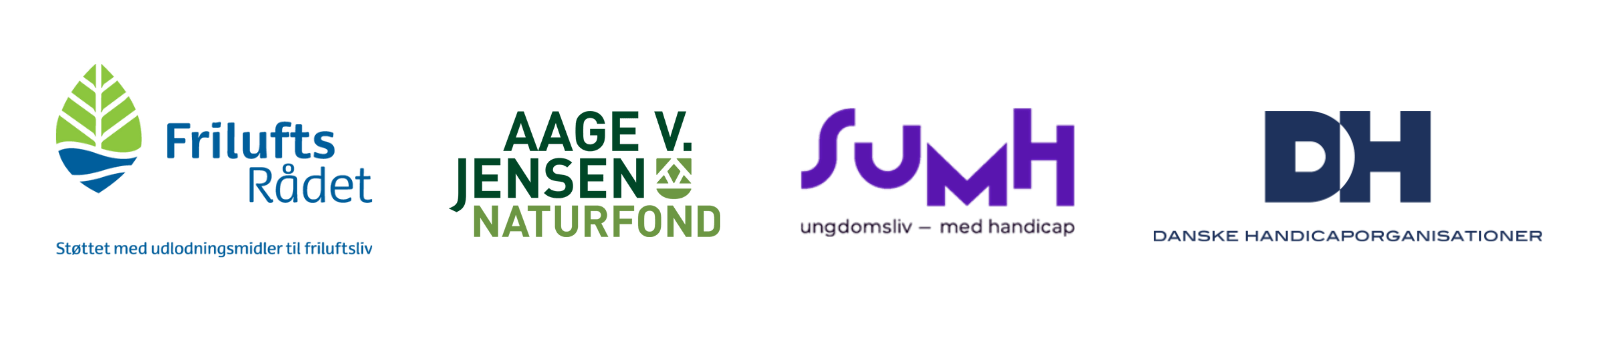 Billede af Friluftsrådets logo, Aage V. Jensen-logo, SUMH-logo og DH-logo uden baggrund.